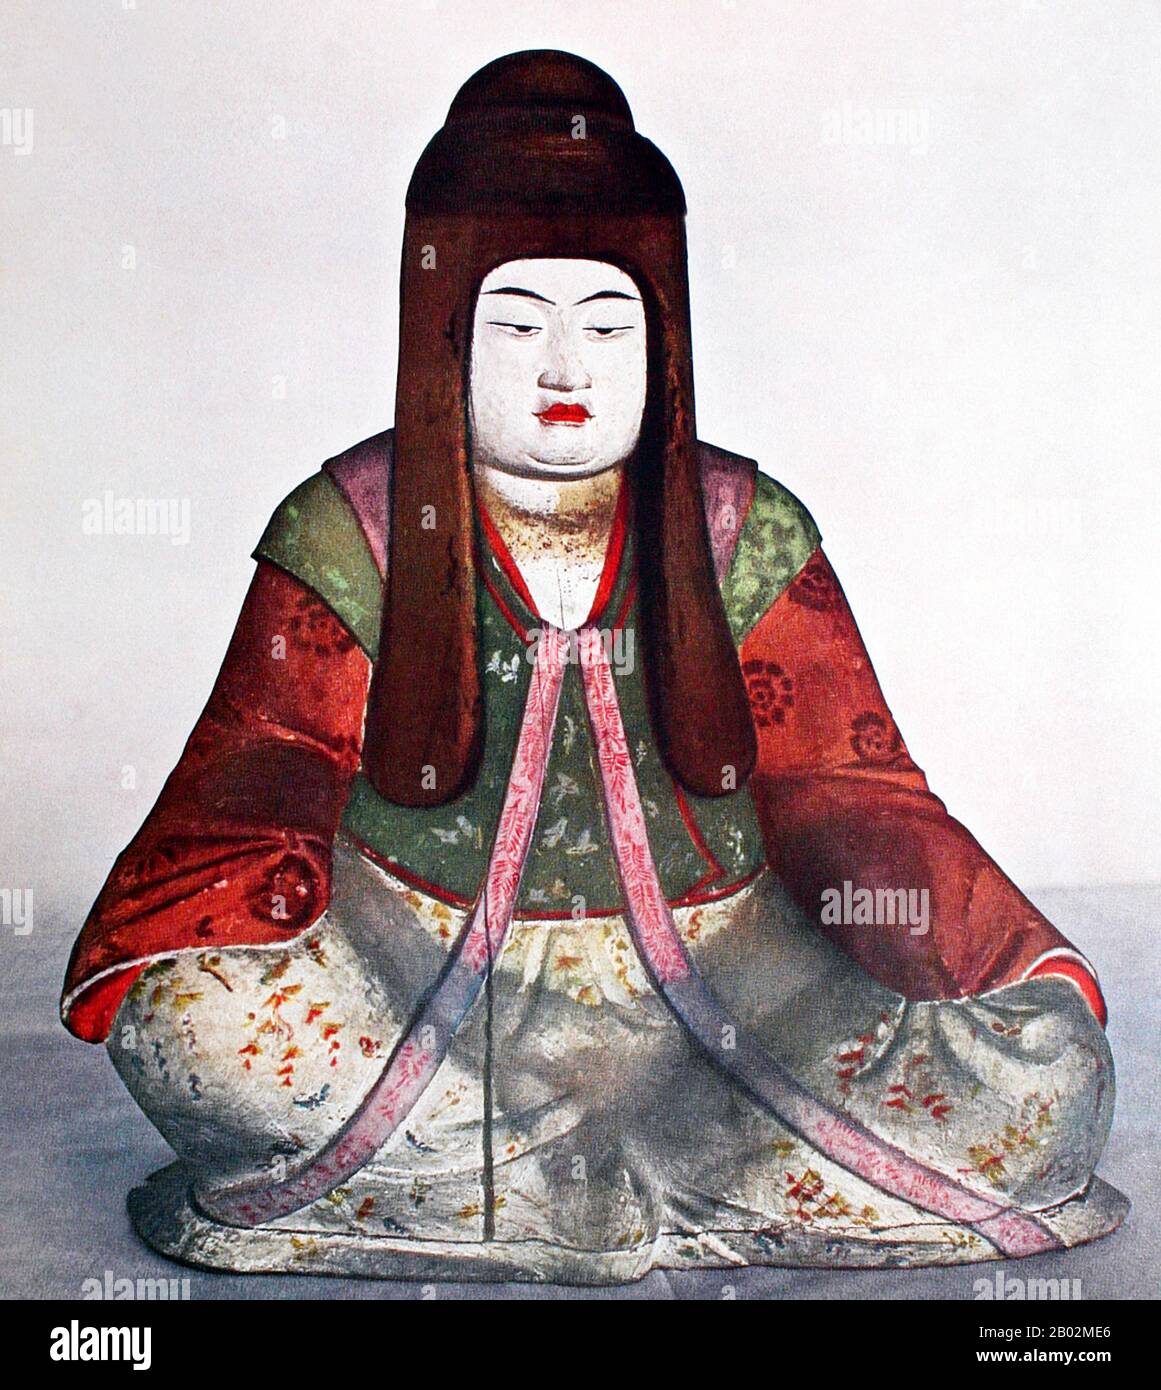 Die Königin Jingu wurde Kaiser Chuai (nontional 192 - 200 CE) zugesegnet, sie diente auch als Regentin von der Zeit des Todes ihres Mannes 209 bis ihr Sohn Kaiser Ōjin 269 auf den Thron kam.keine festen Daten können dem Leben oder der Herrschaft dieser historischen Figur zugeordnet werden. Jingū wird von Historikern wegen der Informationsraute über sie als "legendäre" Figur angesehen. Der Legende nach führte sie eine Armee bei einer Invasion Koreas an und kehrte nach drei Jahren siegreich nach Japan zurück. Diese Theorie wird jedoch auch in Japan weithin abgelehnt, da es in keinem Teil Von Kore Hinweise auf japanische Herrschaft gibt Stockfoto